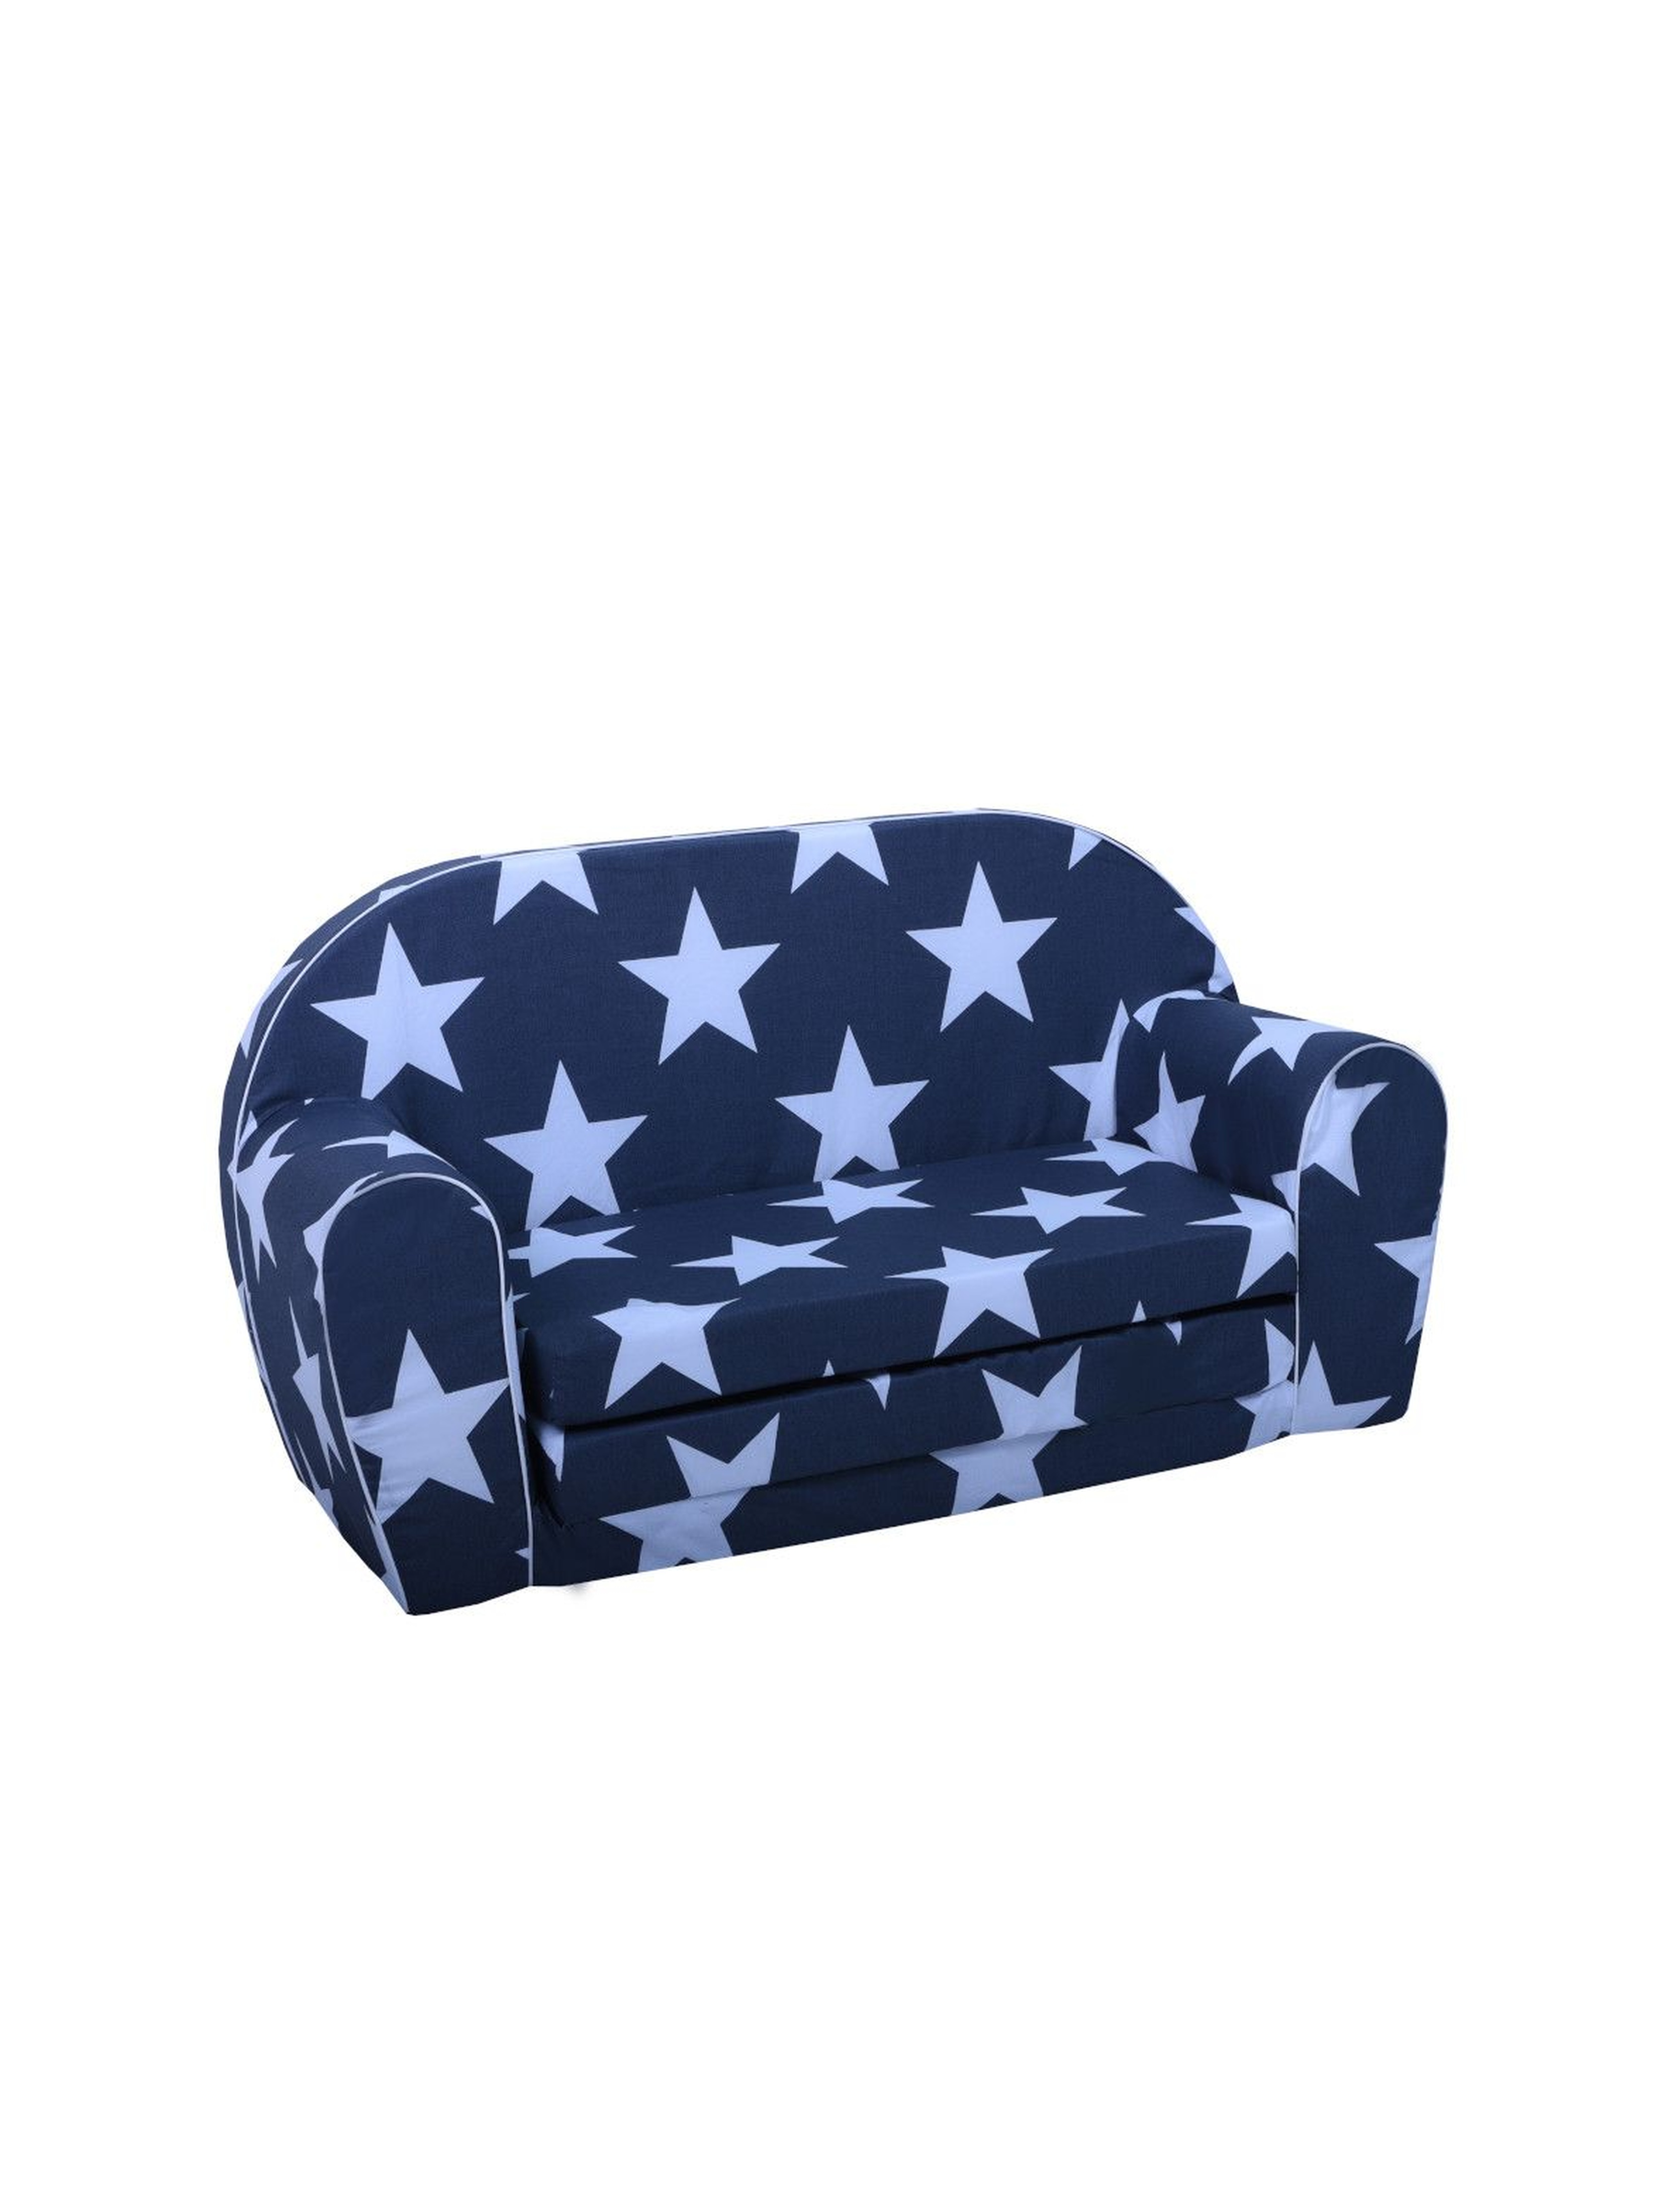 Granatowa sofa w niebieskie gwiazdki